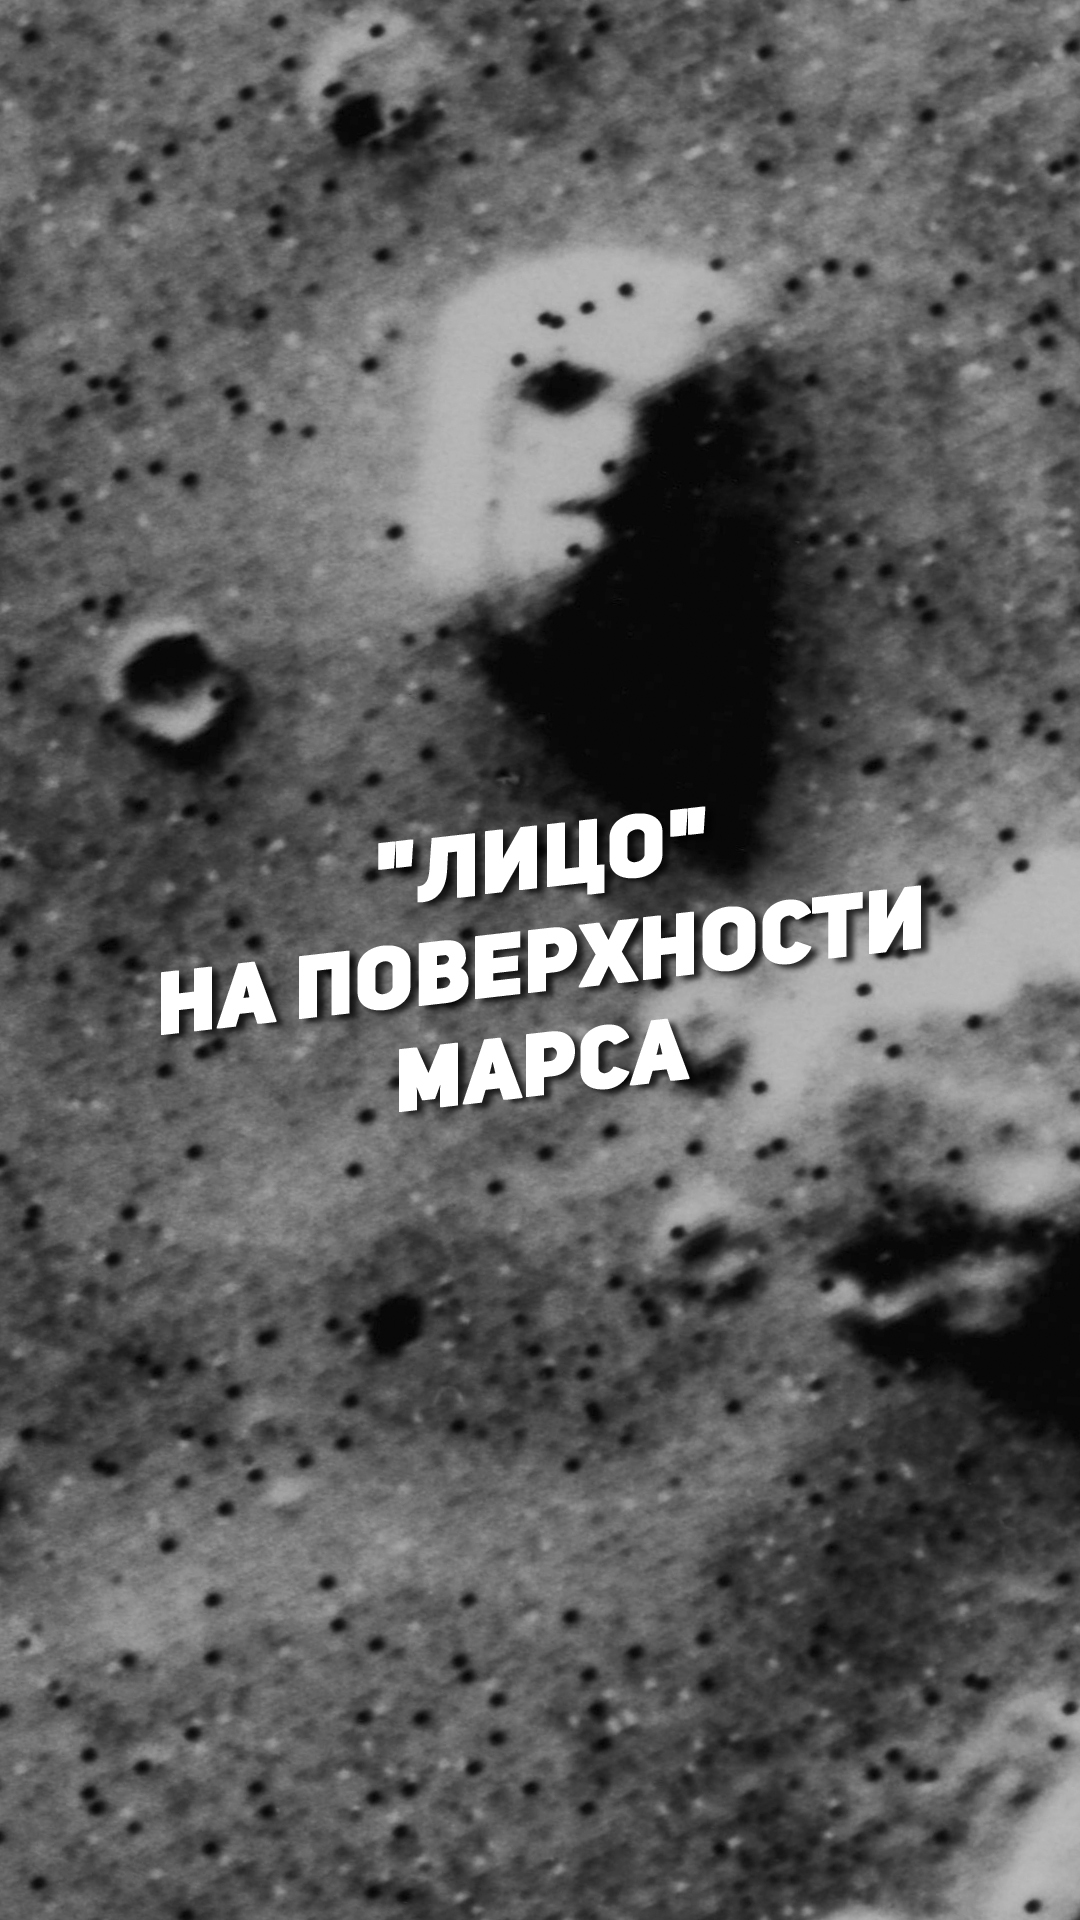 "ЛИЦО" НА ПОВЕРХНОСТИ МАРСА | THE SPACEWAY